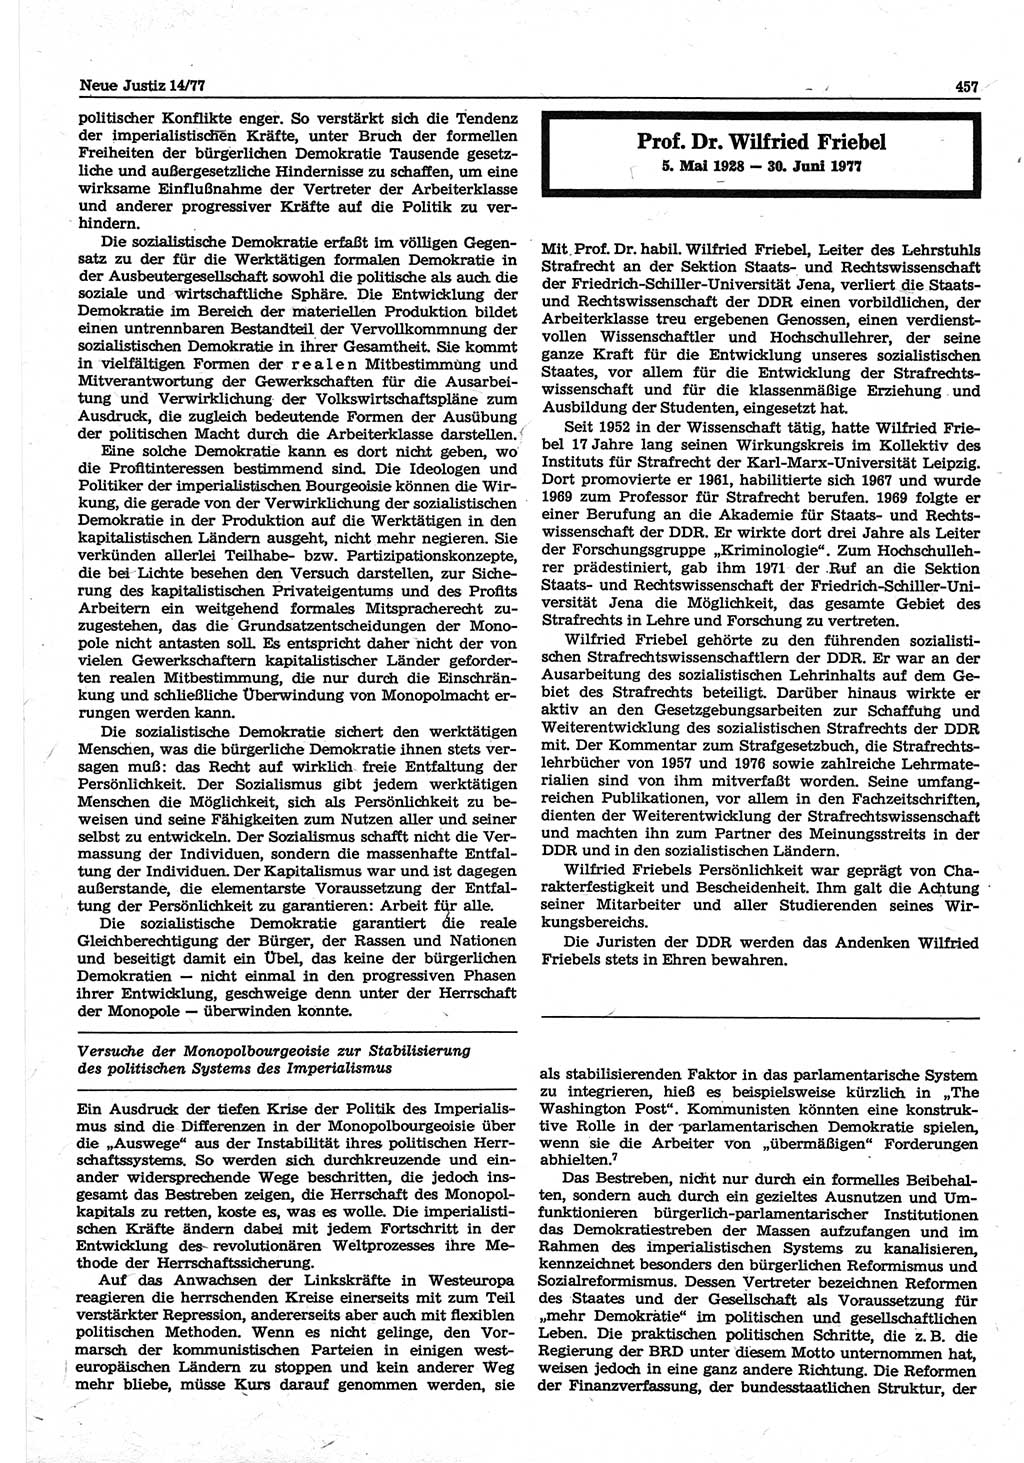 Neue Justiz (NJ), Zeitschrift für Recht und Rechtswissenschaft-Zeitschrift, sozialistisches Recht und Gesetzlichkeit, 31. Jahrgang 1977, Seite 457 (NJ DDR 1977, S. 457)